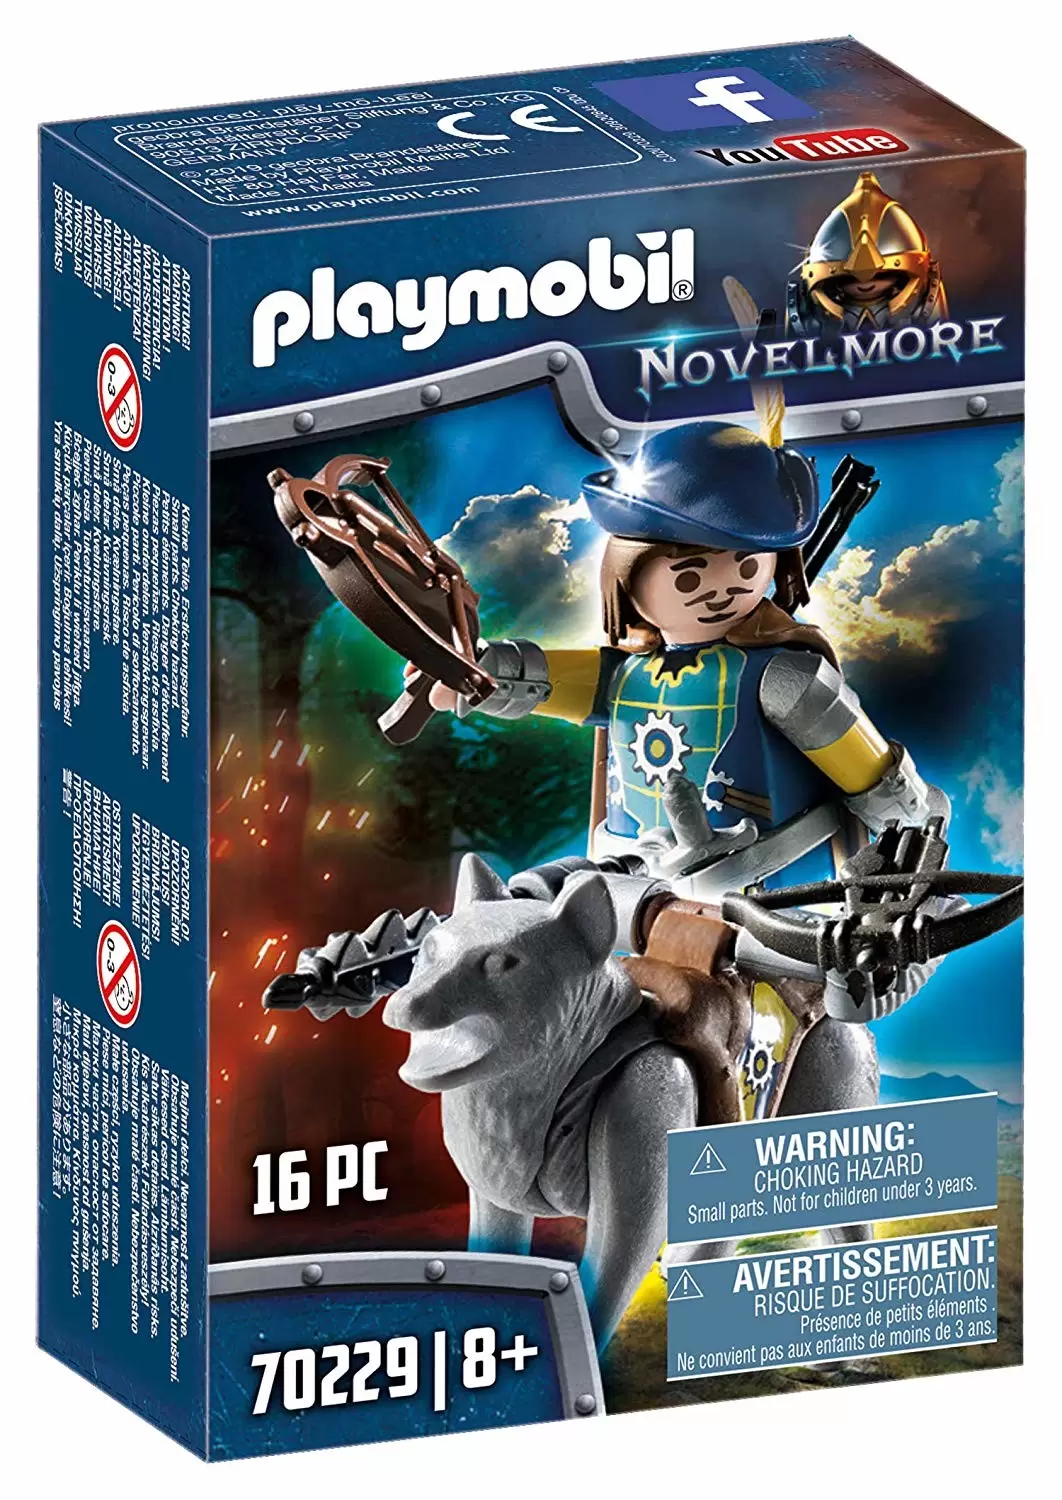 Playmobil Novelmore - Chevalier avec loup